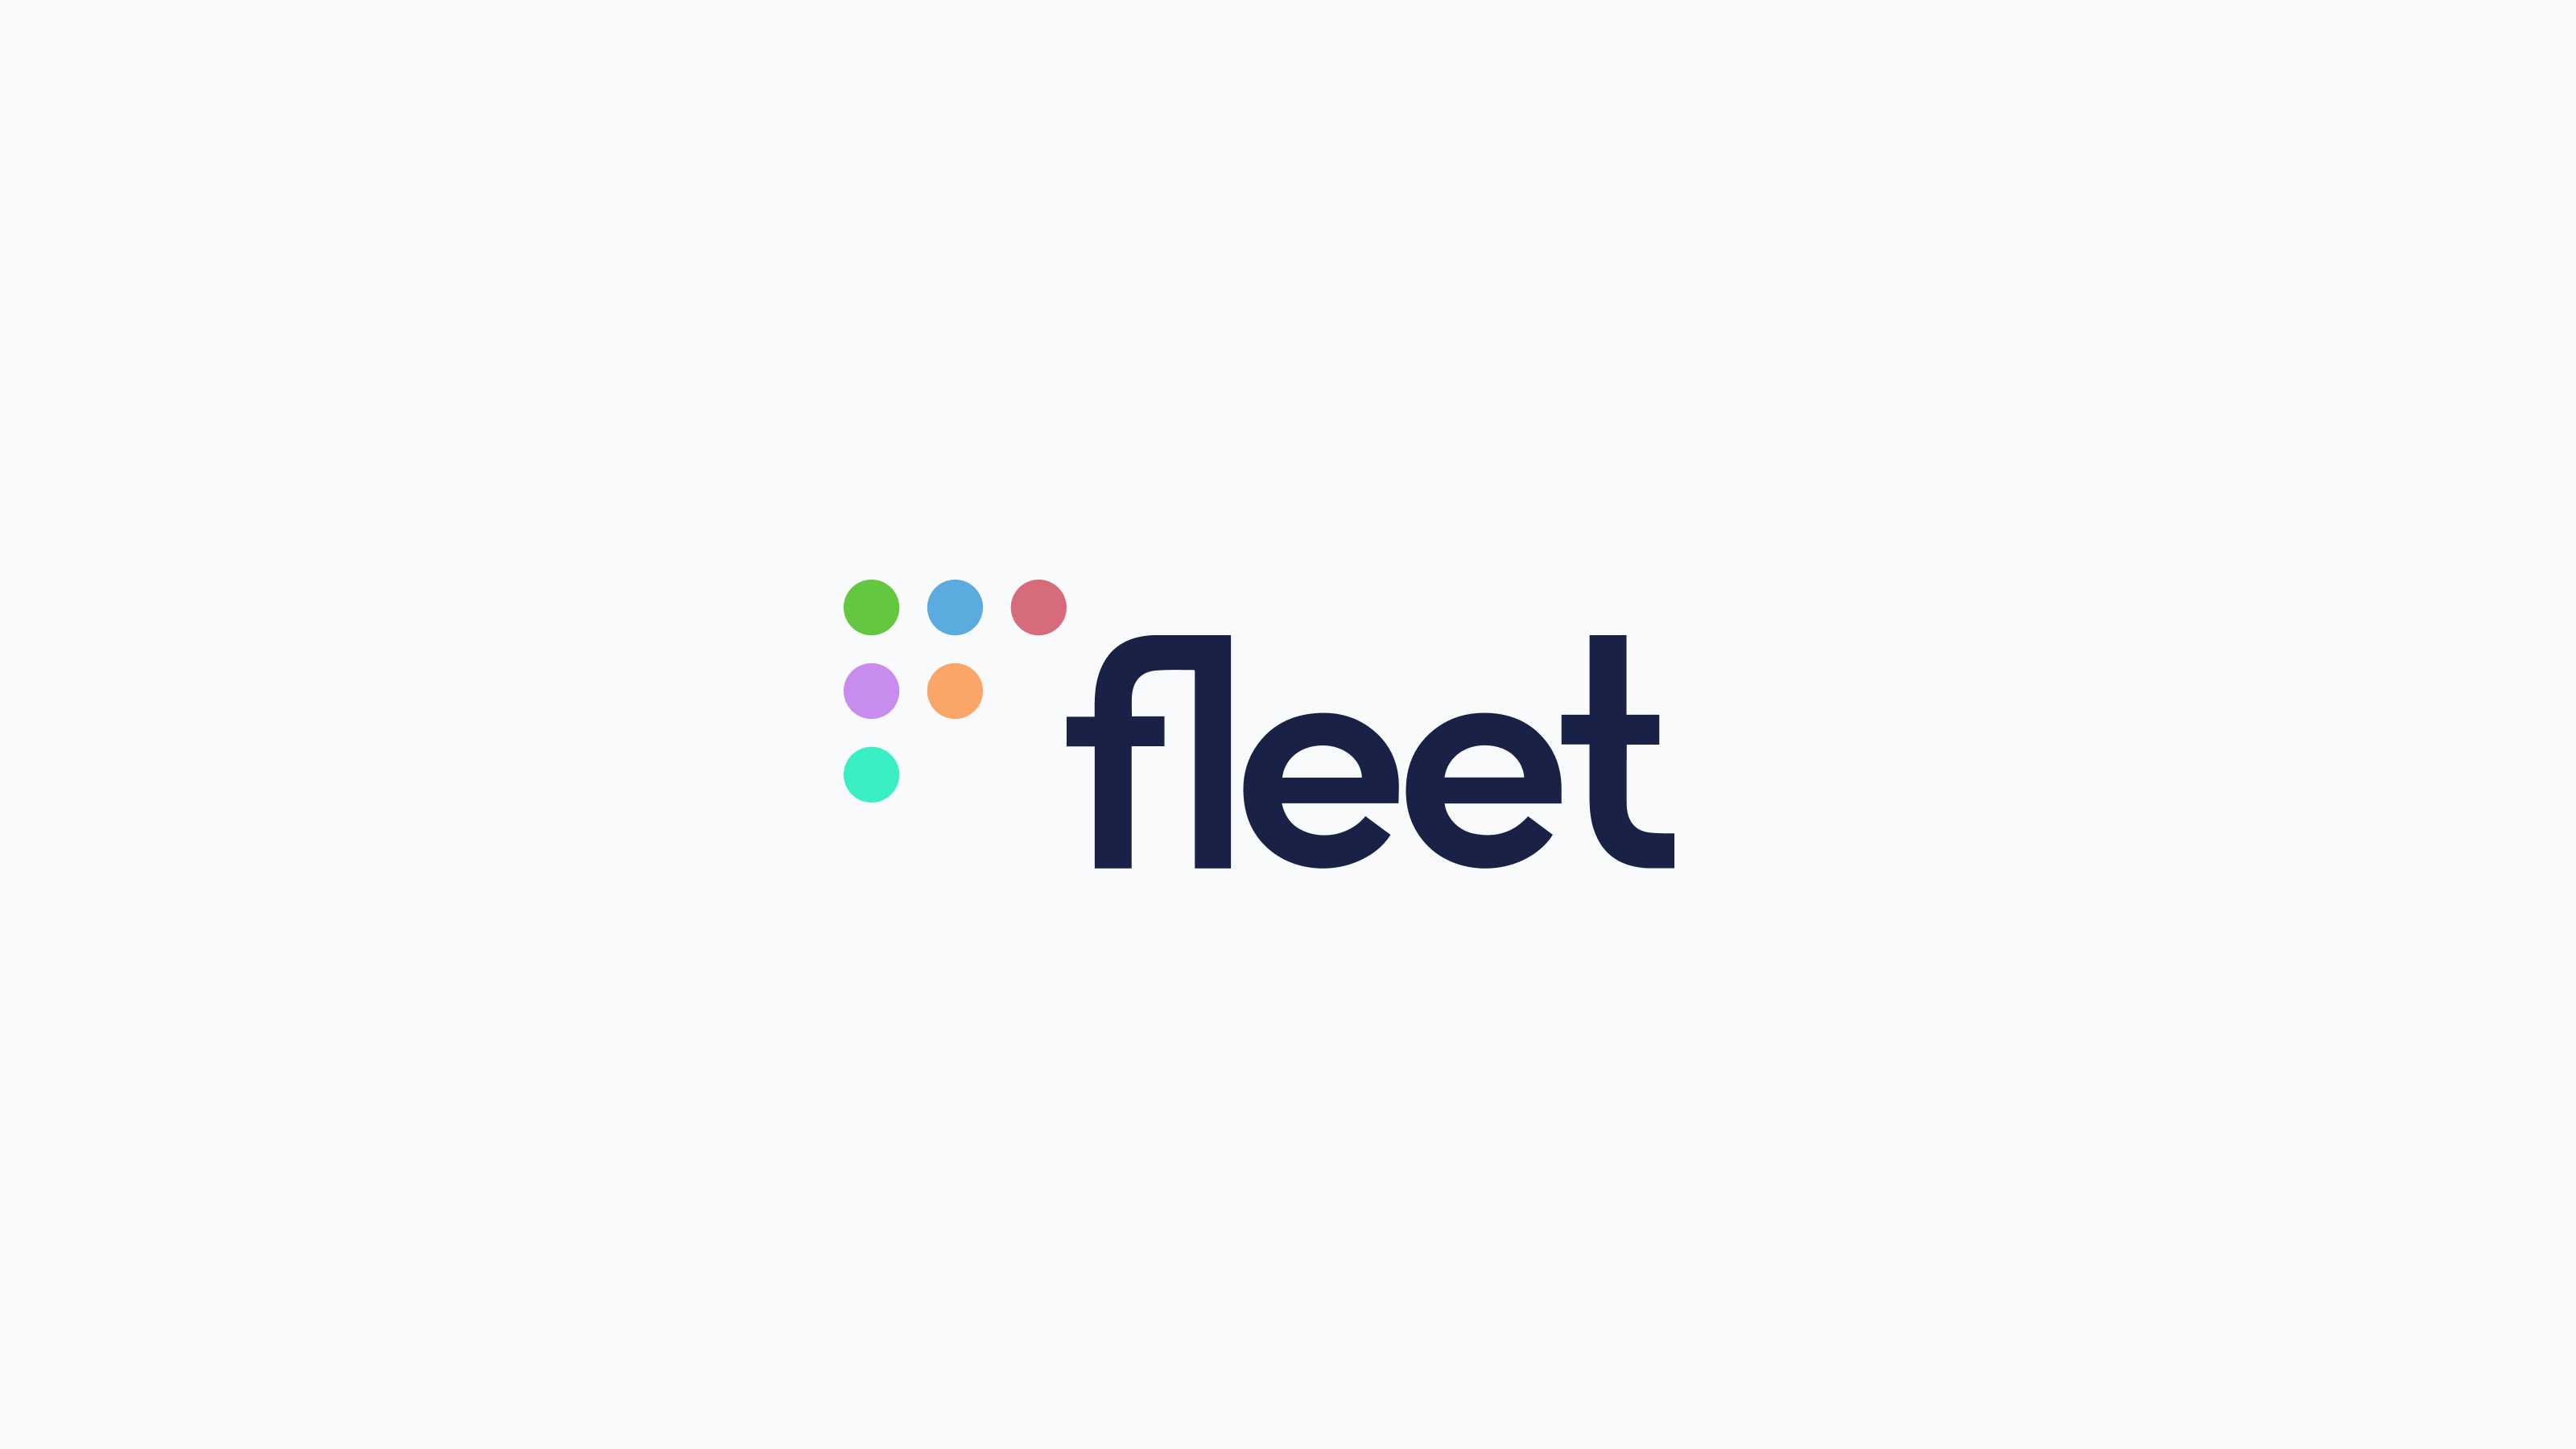 Two people talking about Fleet